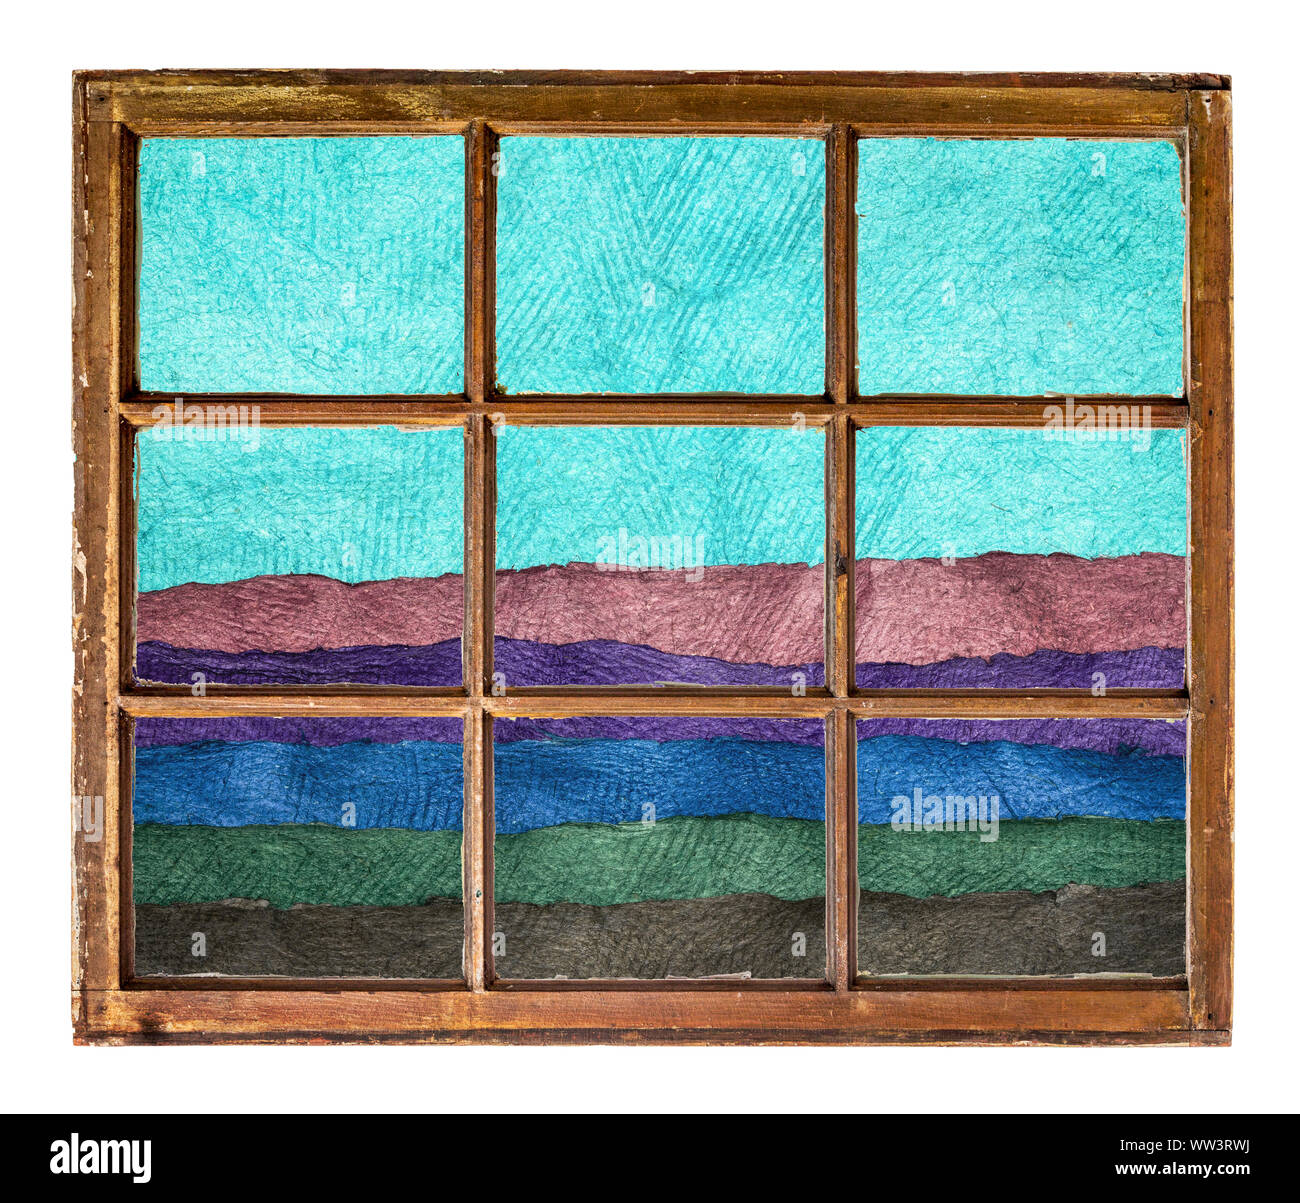 Paysage abstrait dans les tons bleu et vert créé avec des feuilles de papier artisanal comme vu à travers une fenêtre à guillotine vintage Banque D'Images